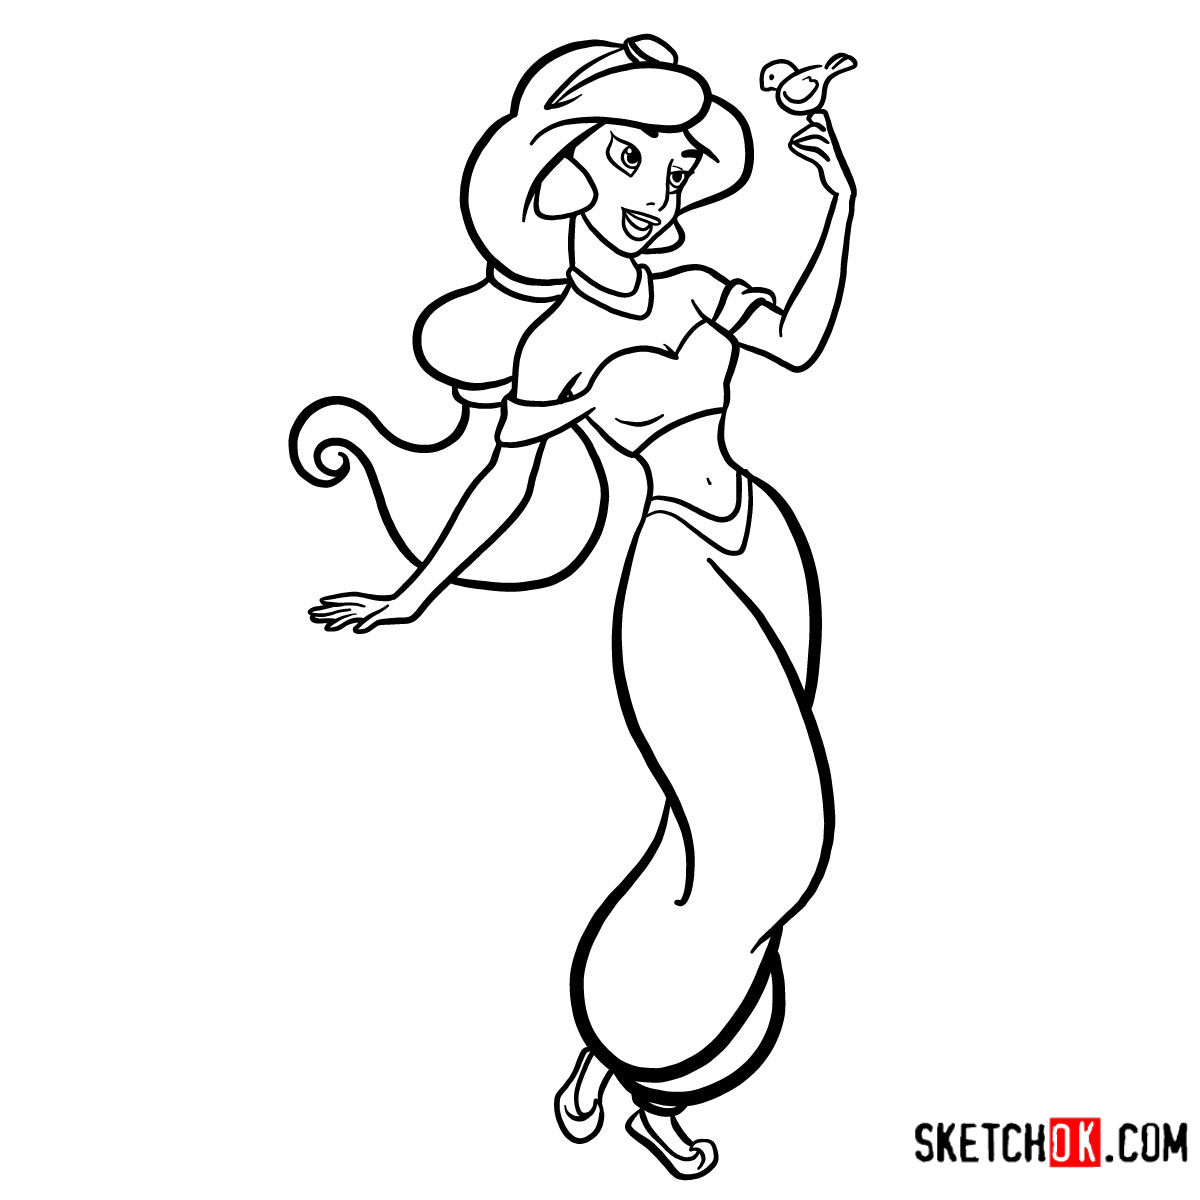 How to Draw Jasmine from Disneys Aladdin  Disney Princess  YouTube